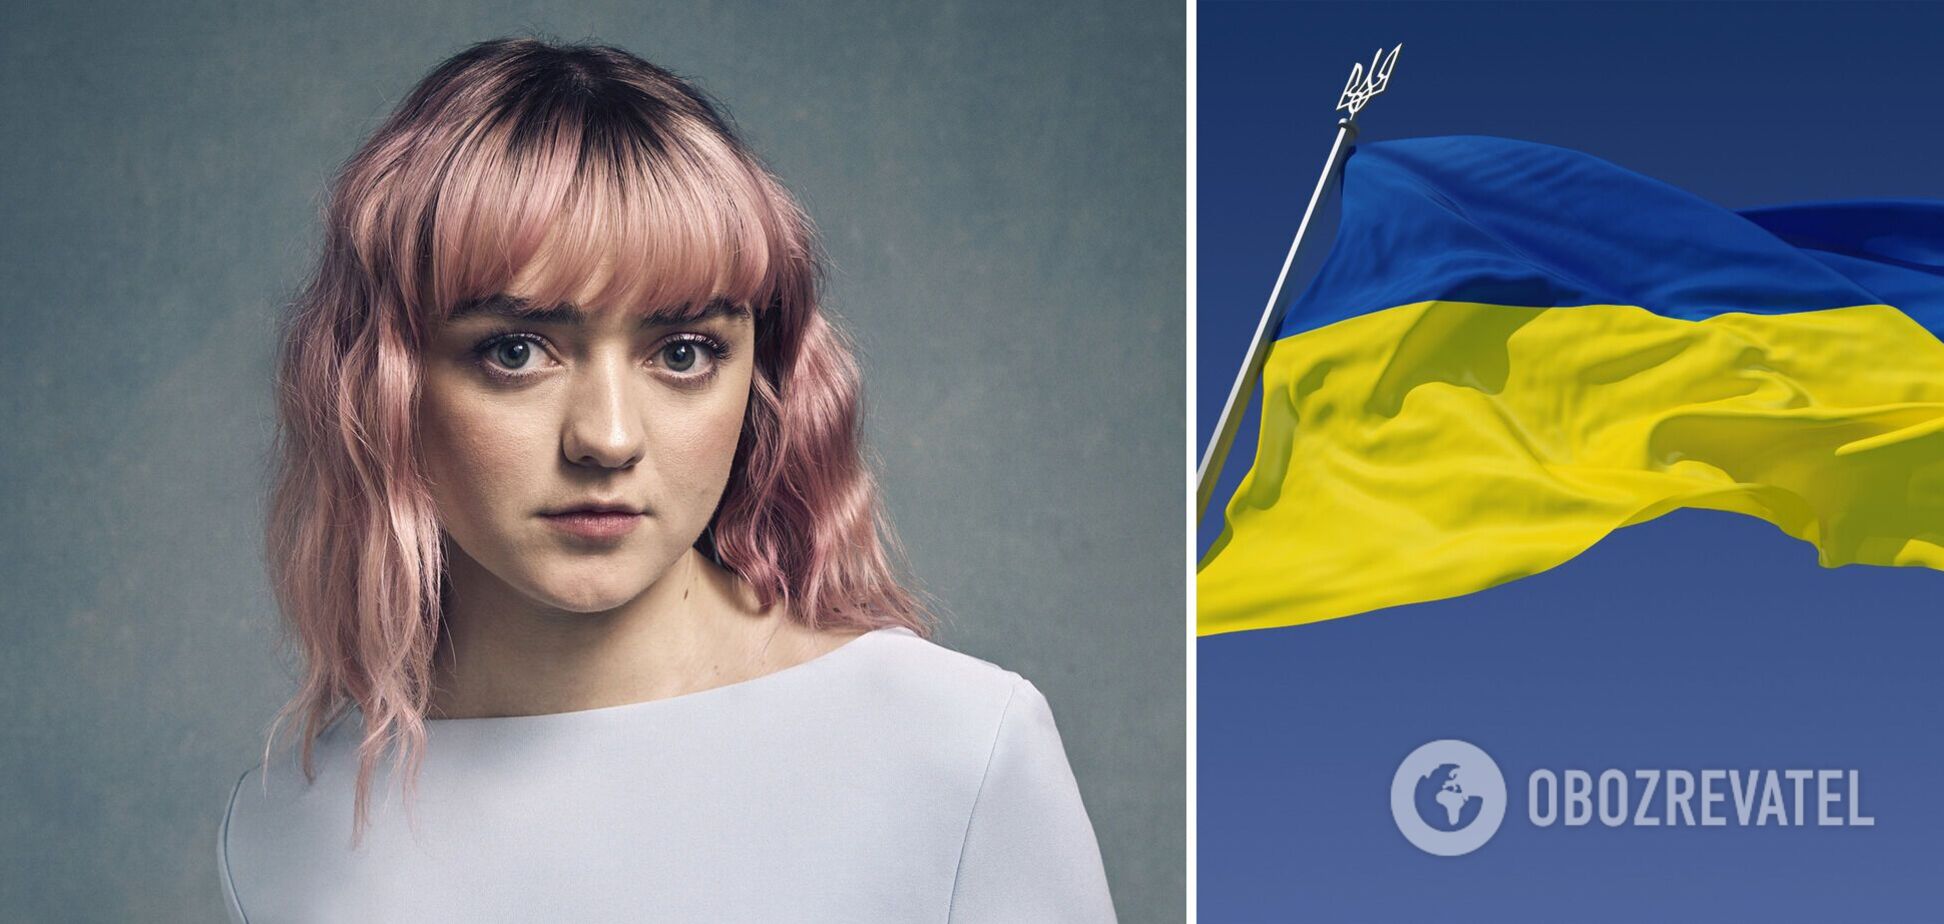 Зірка 'Гри престолів' Мейсі Вільямс відвідає концерт на знак солідарності з народом України